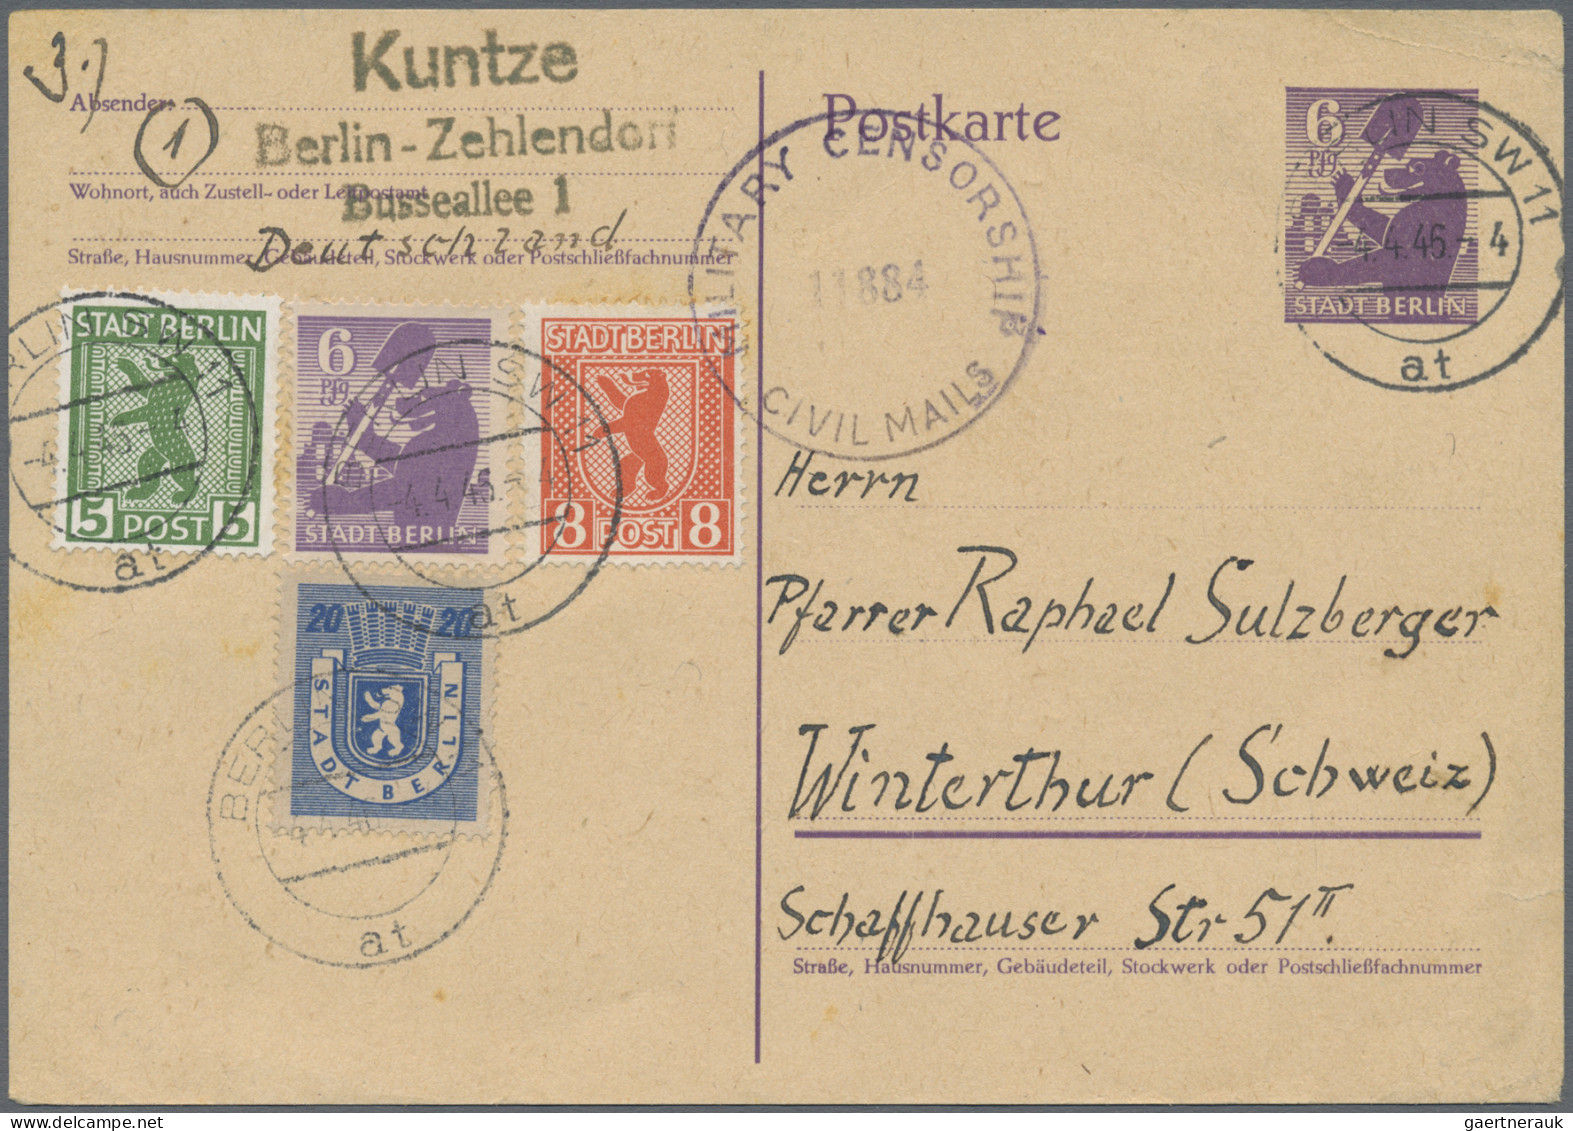 Sowjetische Zone und DDR: 1945/1961, Partie von ca. 58 Briefen und Karten, dabei